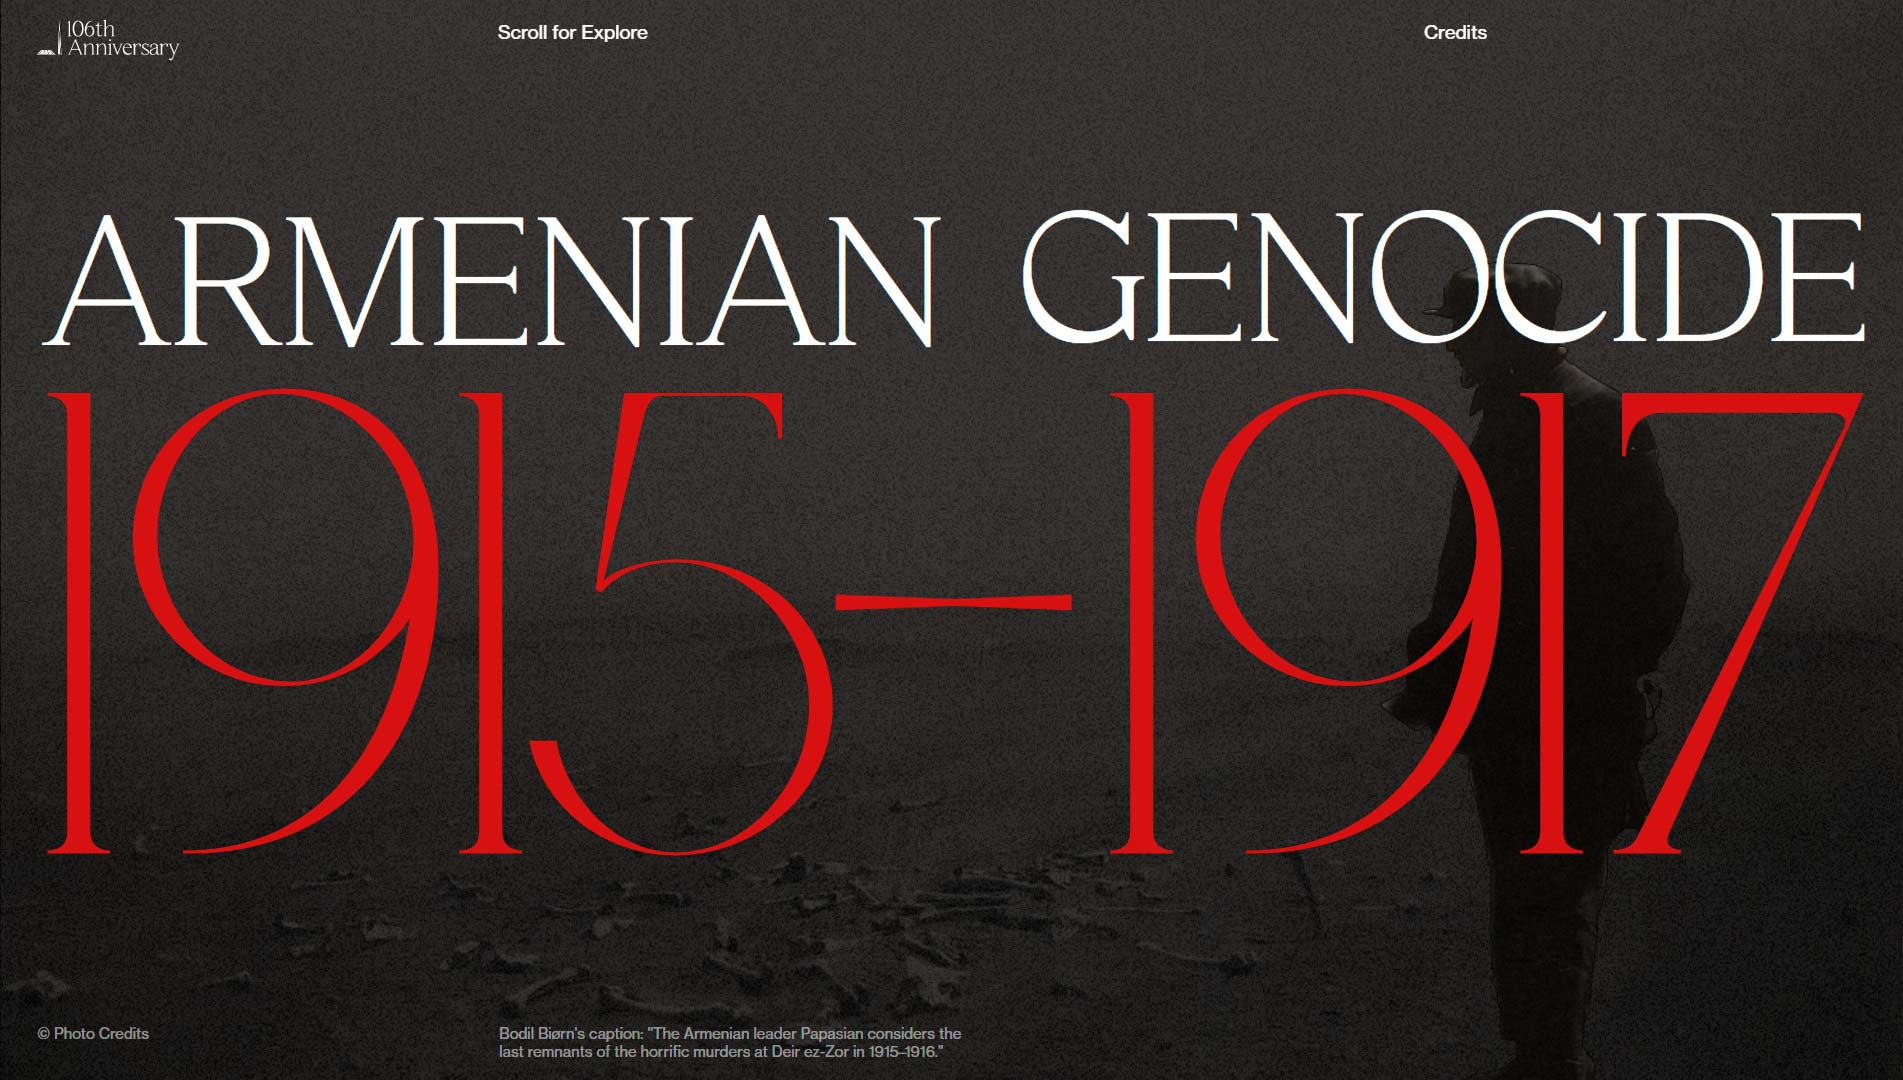 mejores-paginas-web-mes-armenian-genocide-04